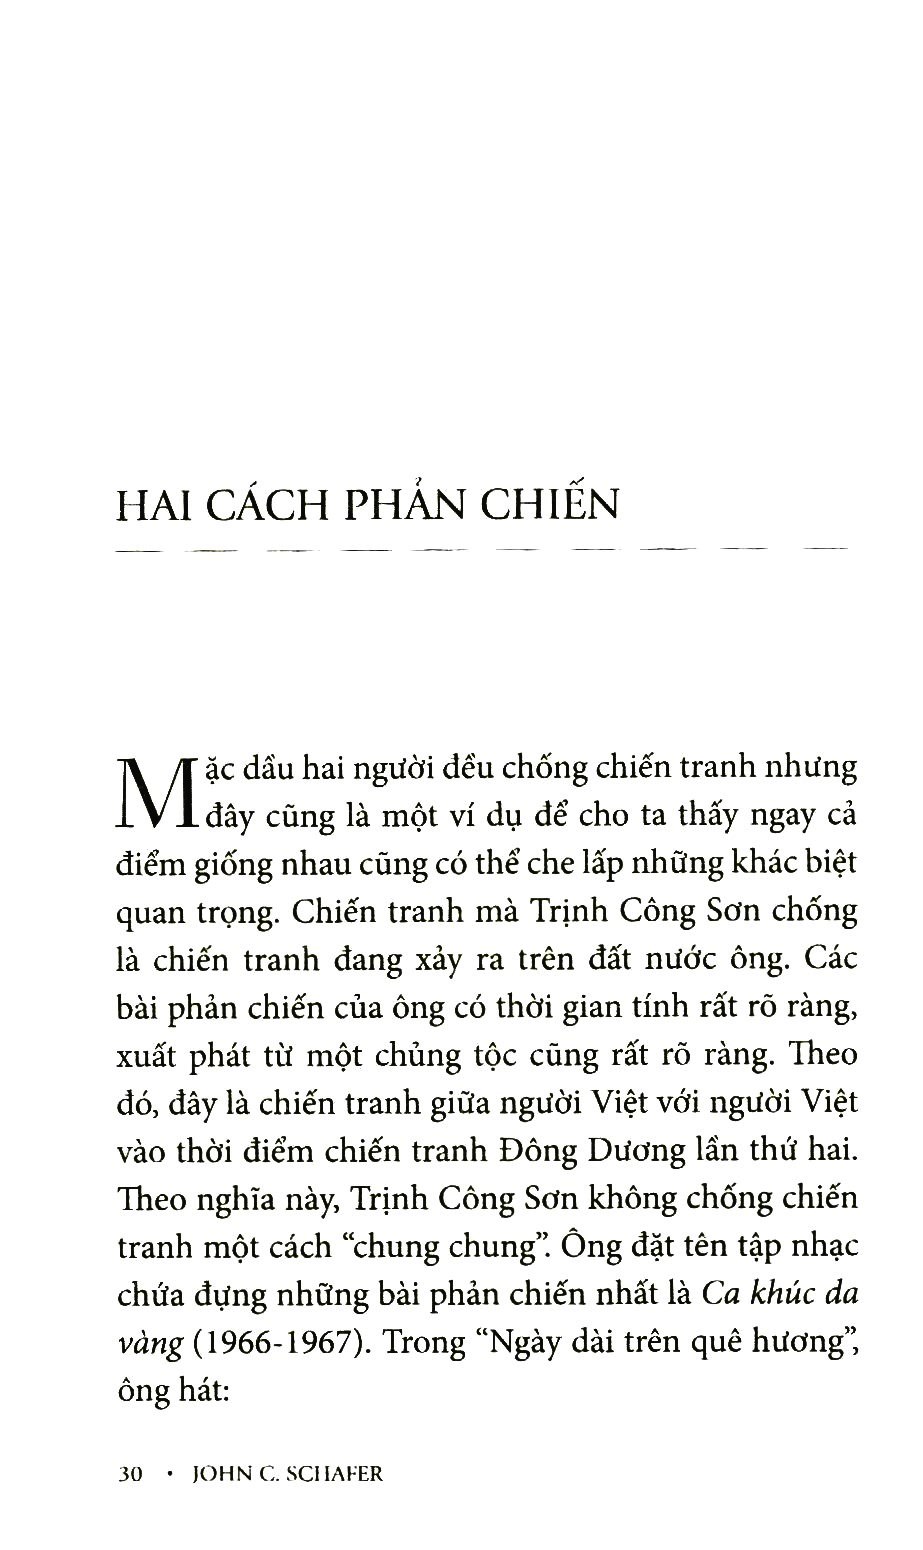 Trịnh Công Sơn Và Bob Dylan PDF